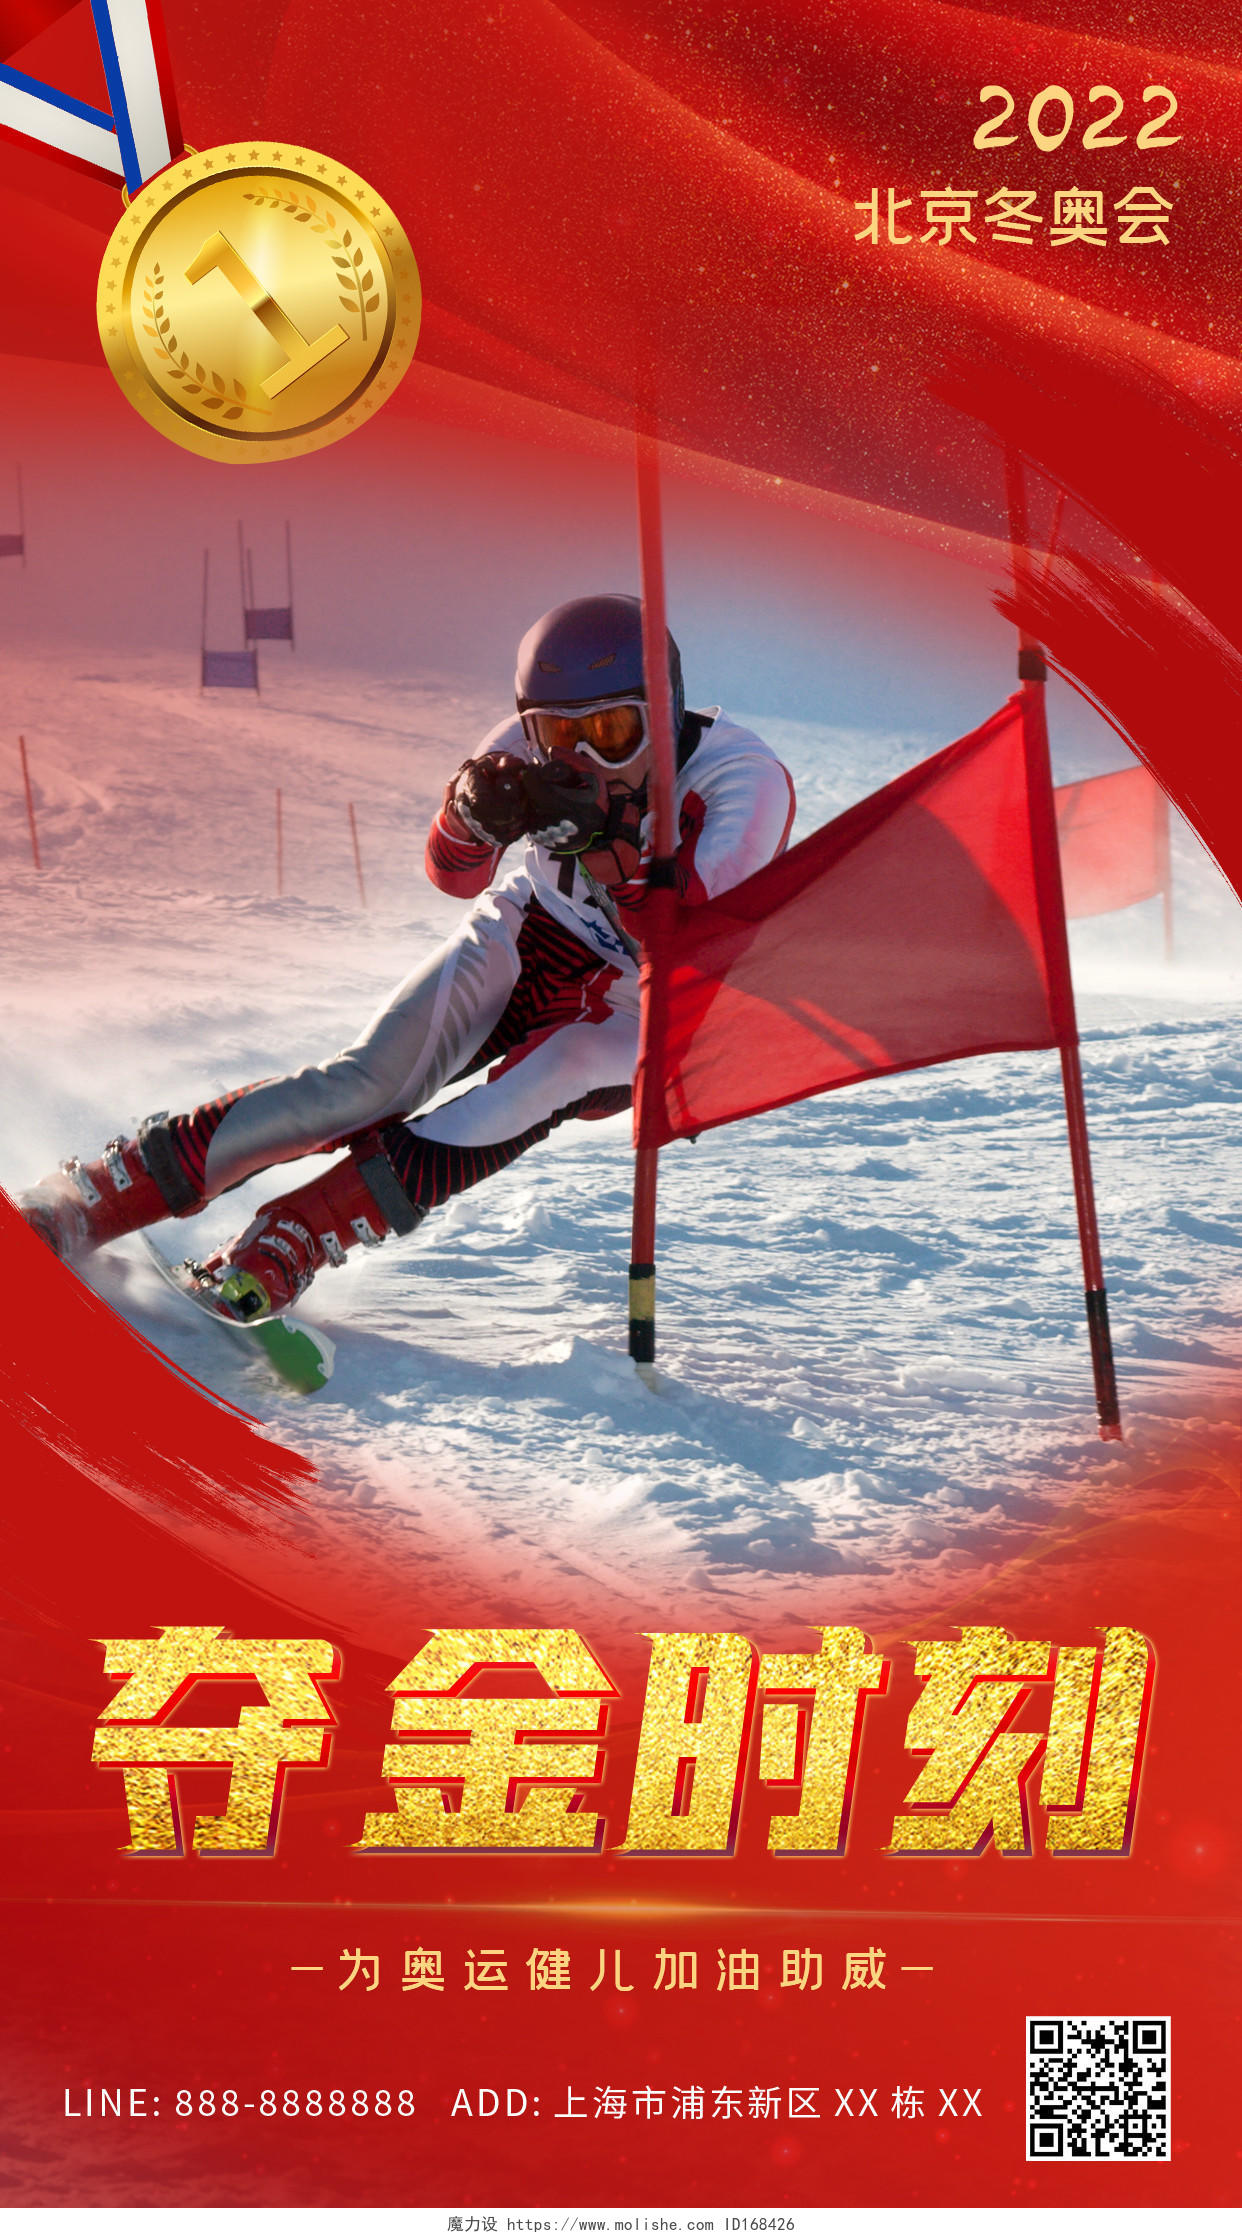 红色金牌滑雪2022北京冬奥会夺金时刻ui手机海报冬奥会喜报手机宣传海报